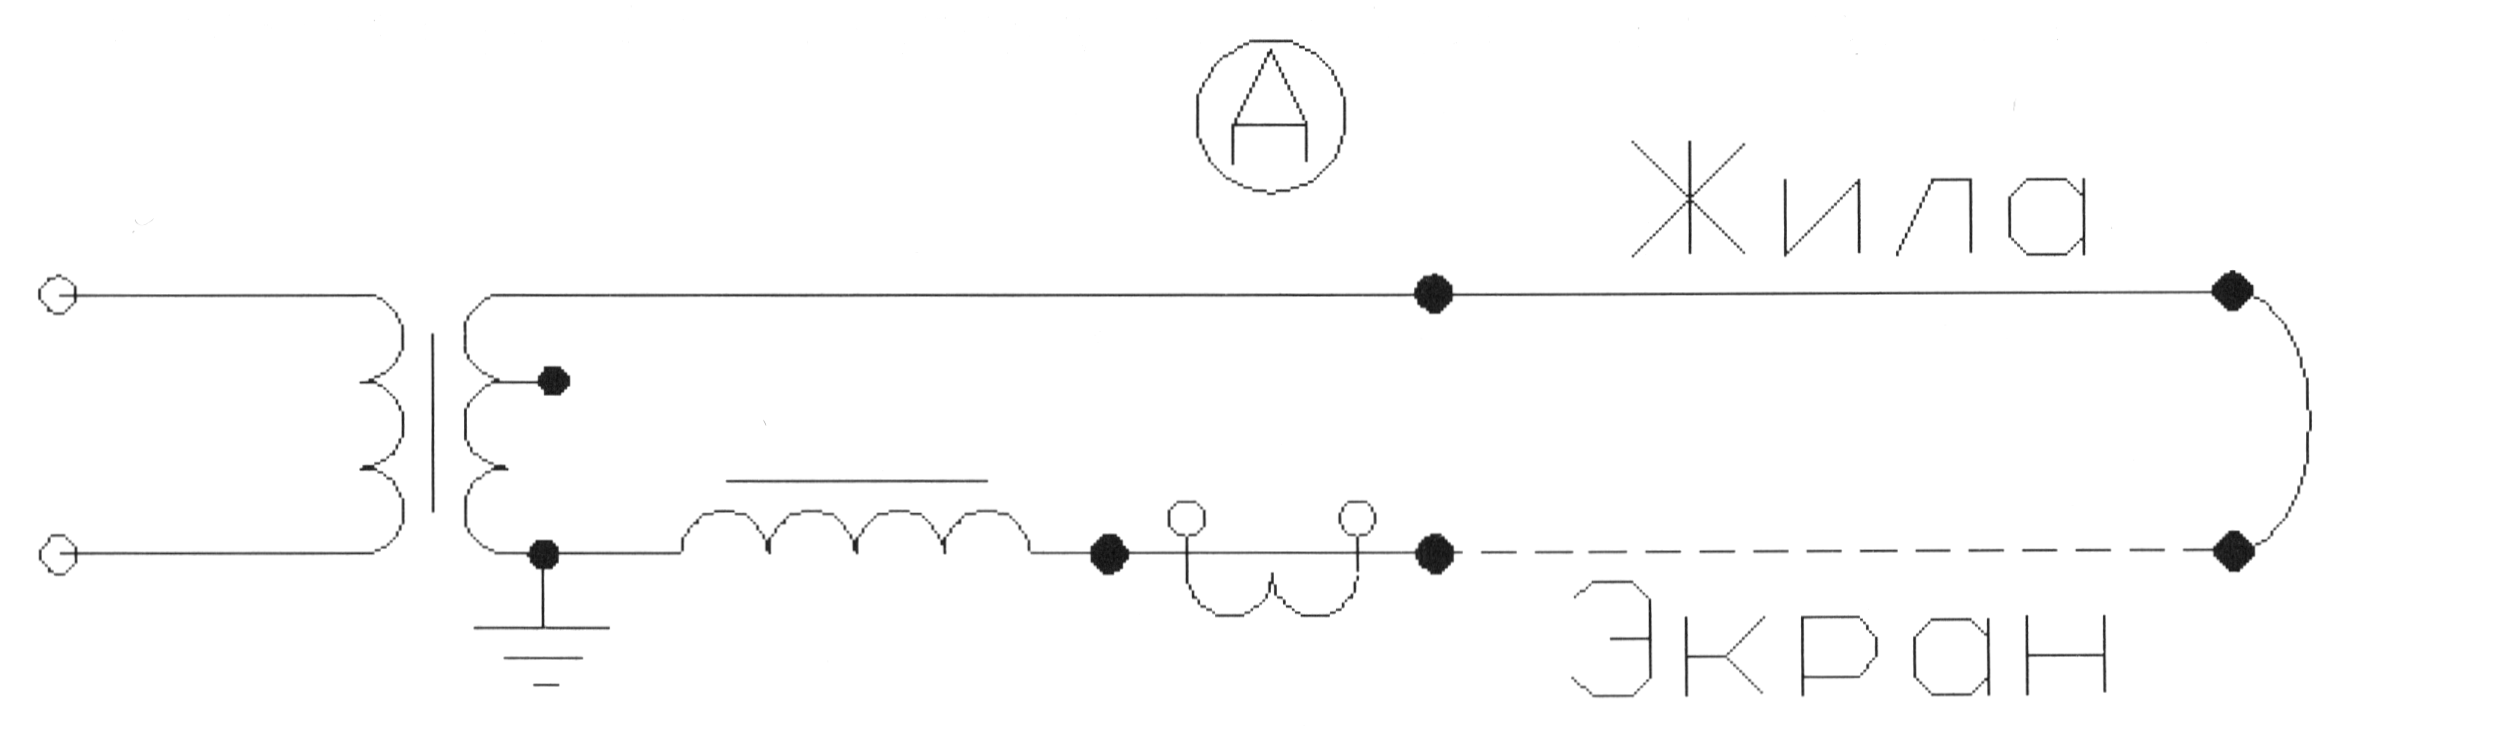 Схема прогрева одножильных кабелей